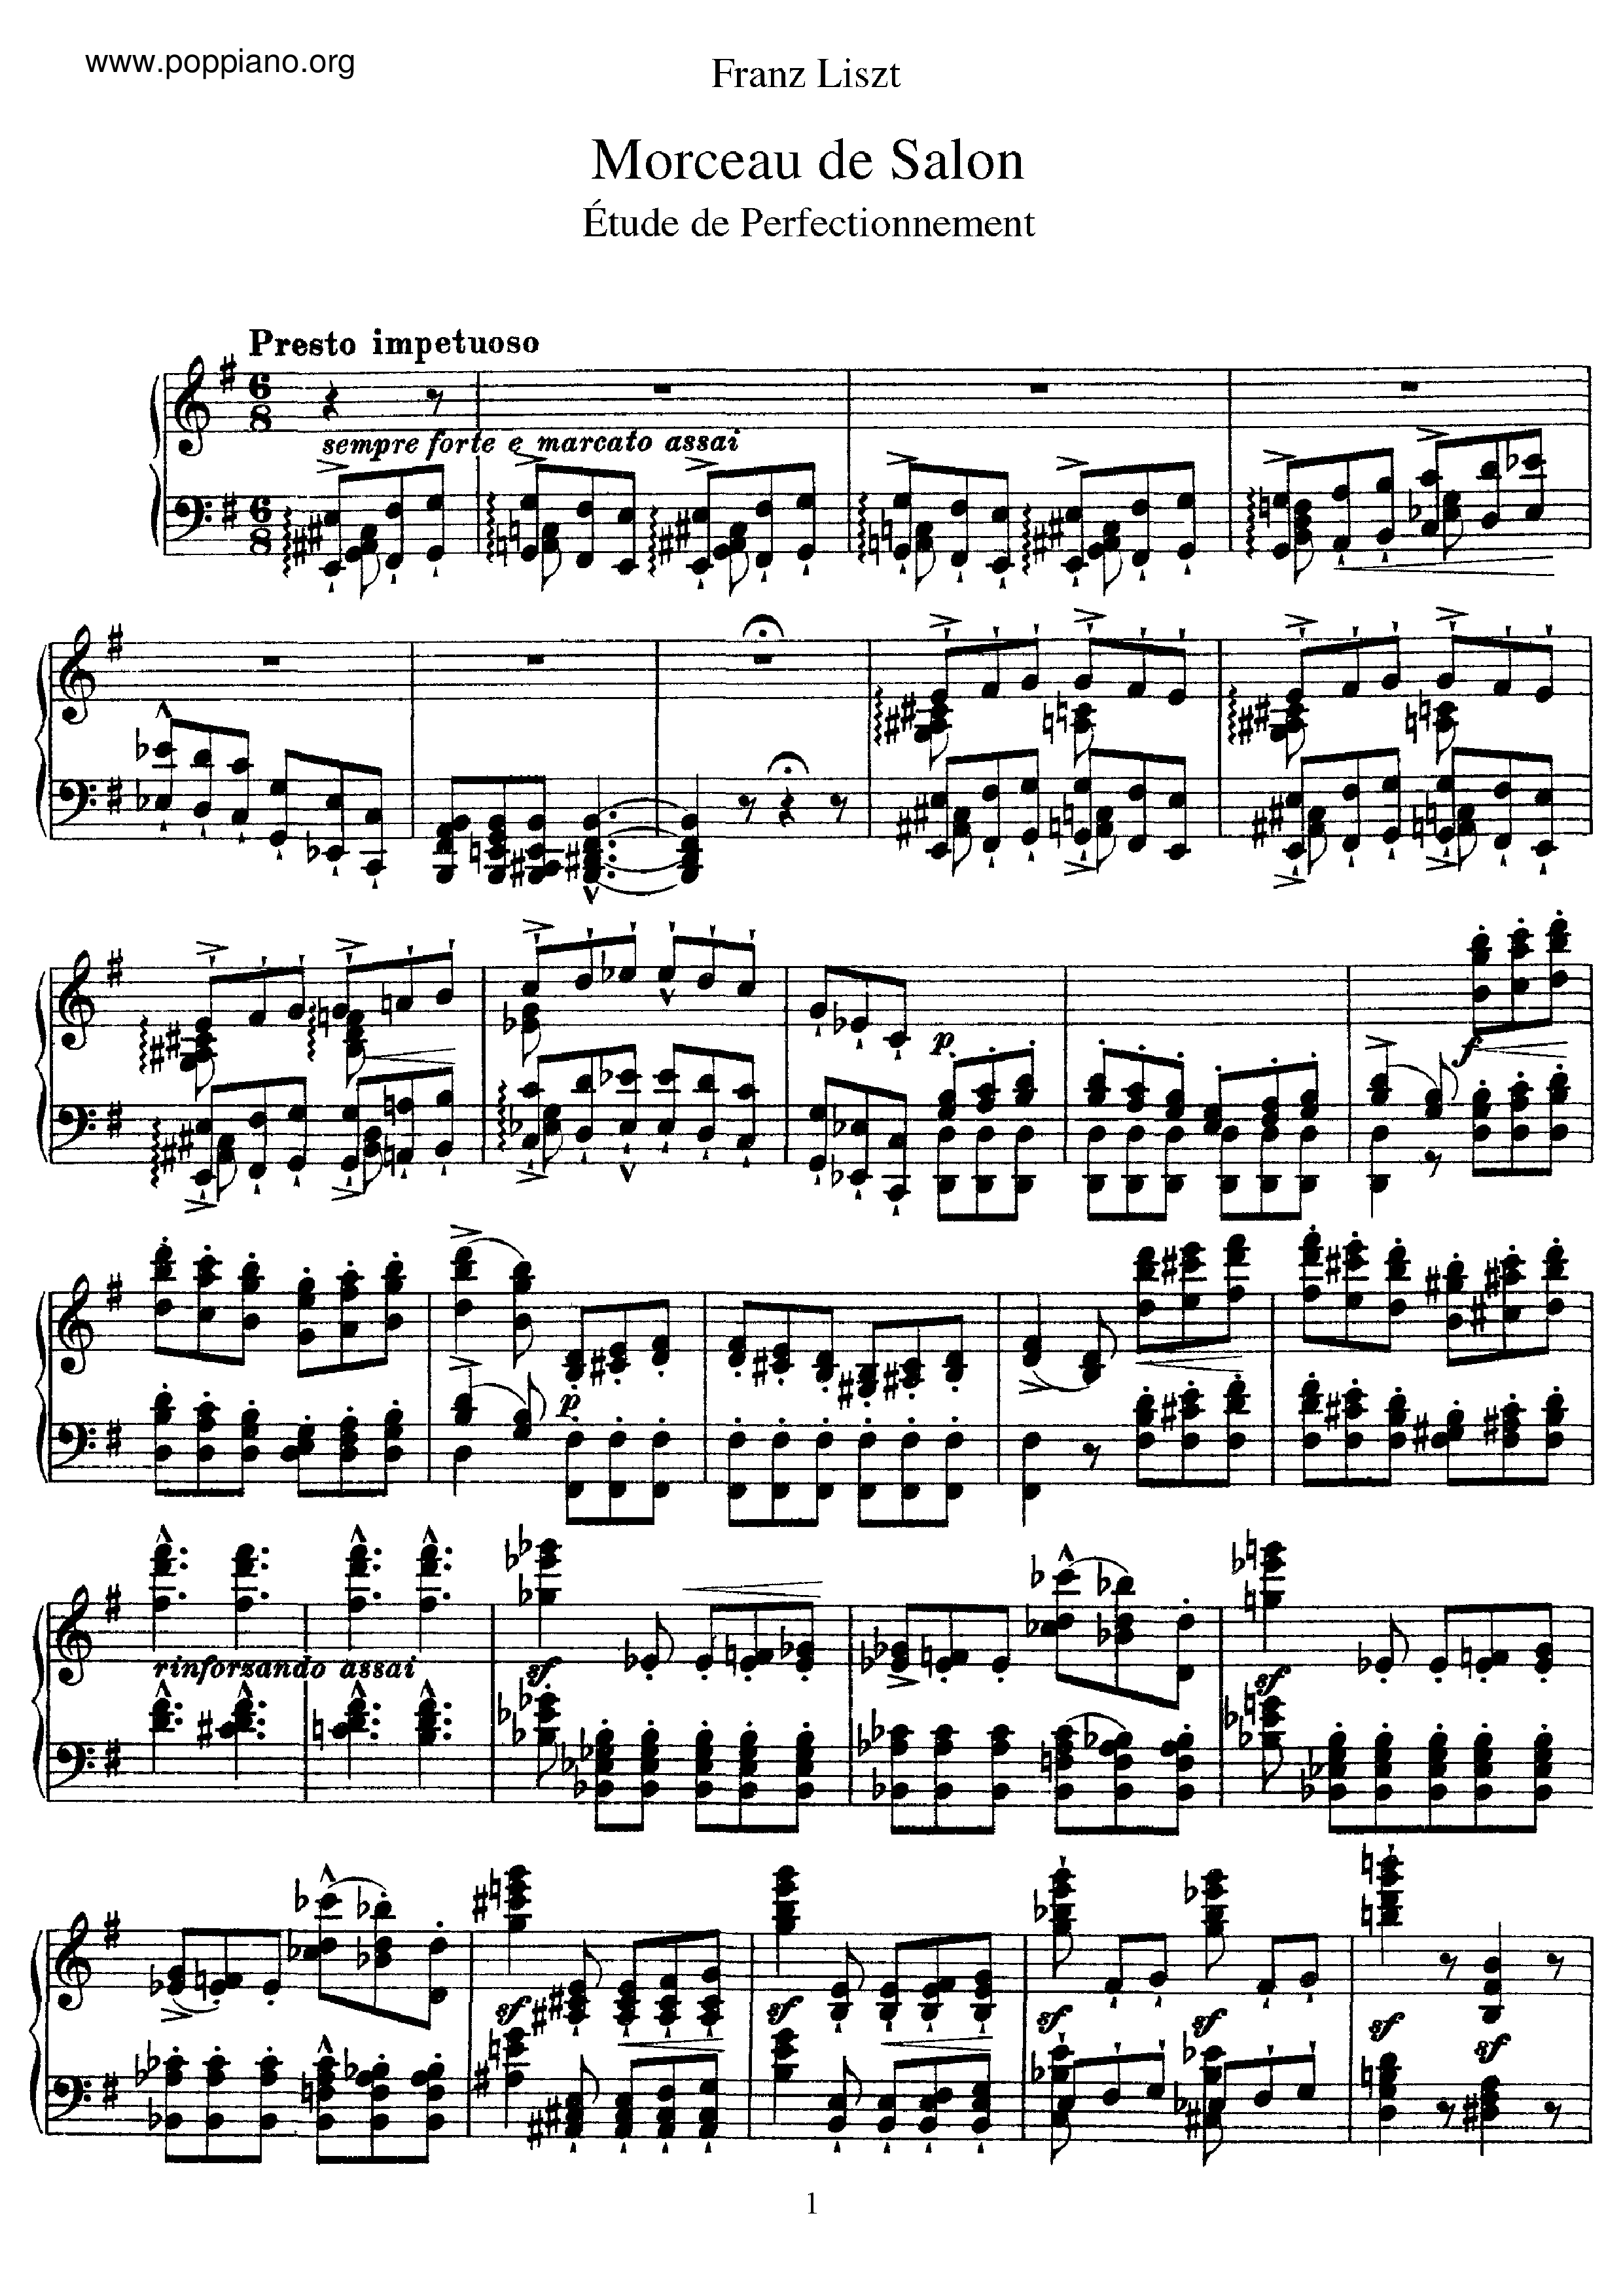 Morceau de Salon, Etude de perfectionnement, S.142琴谱